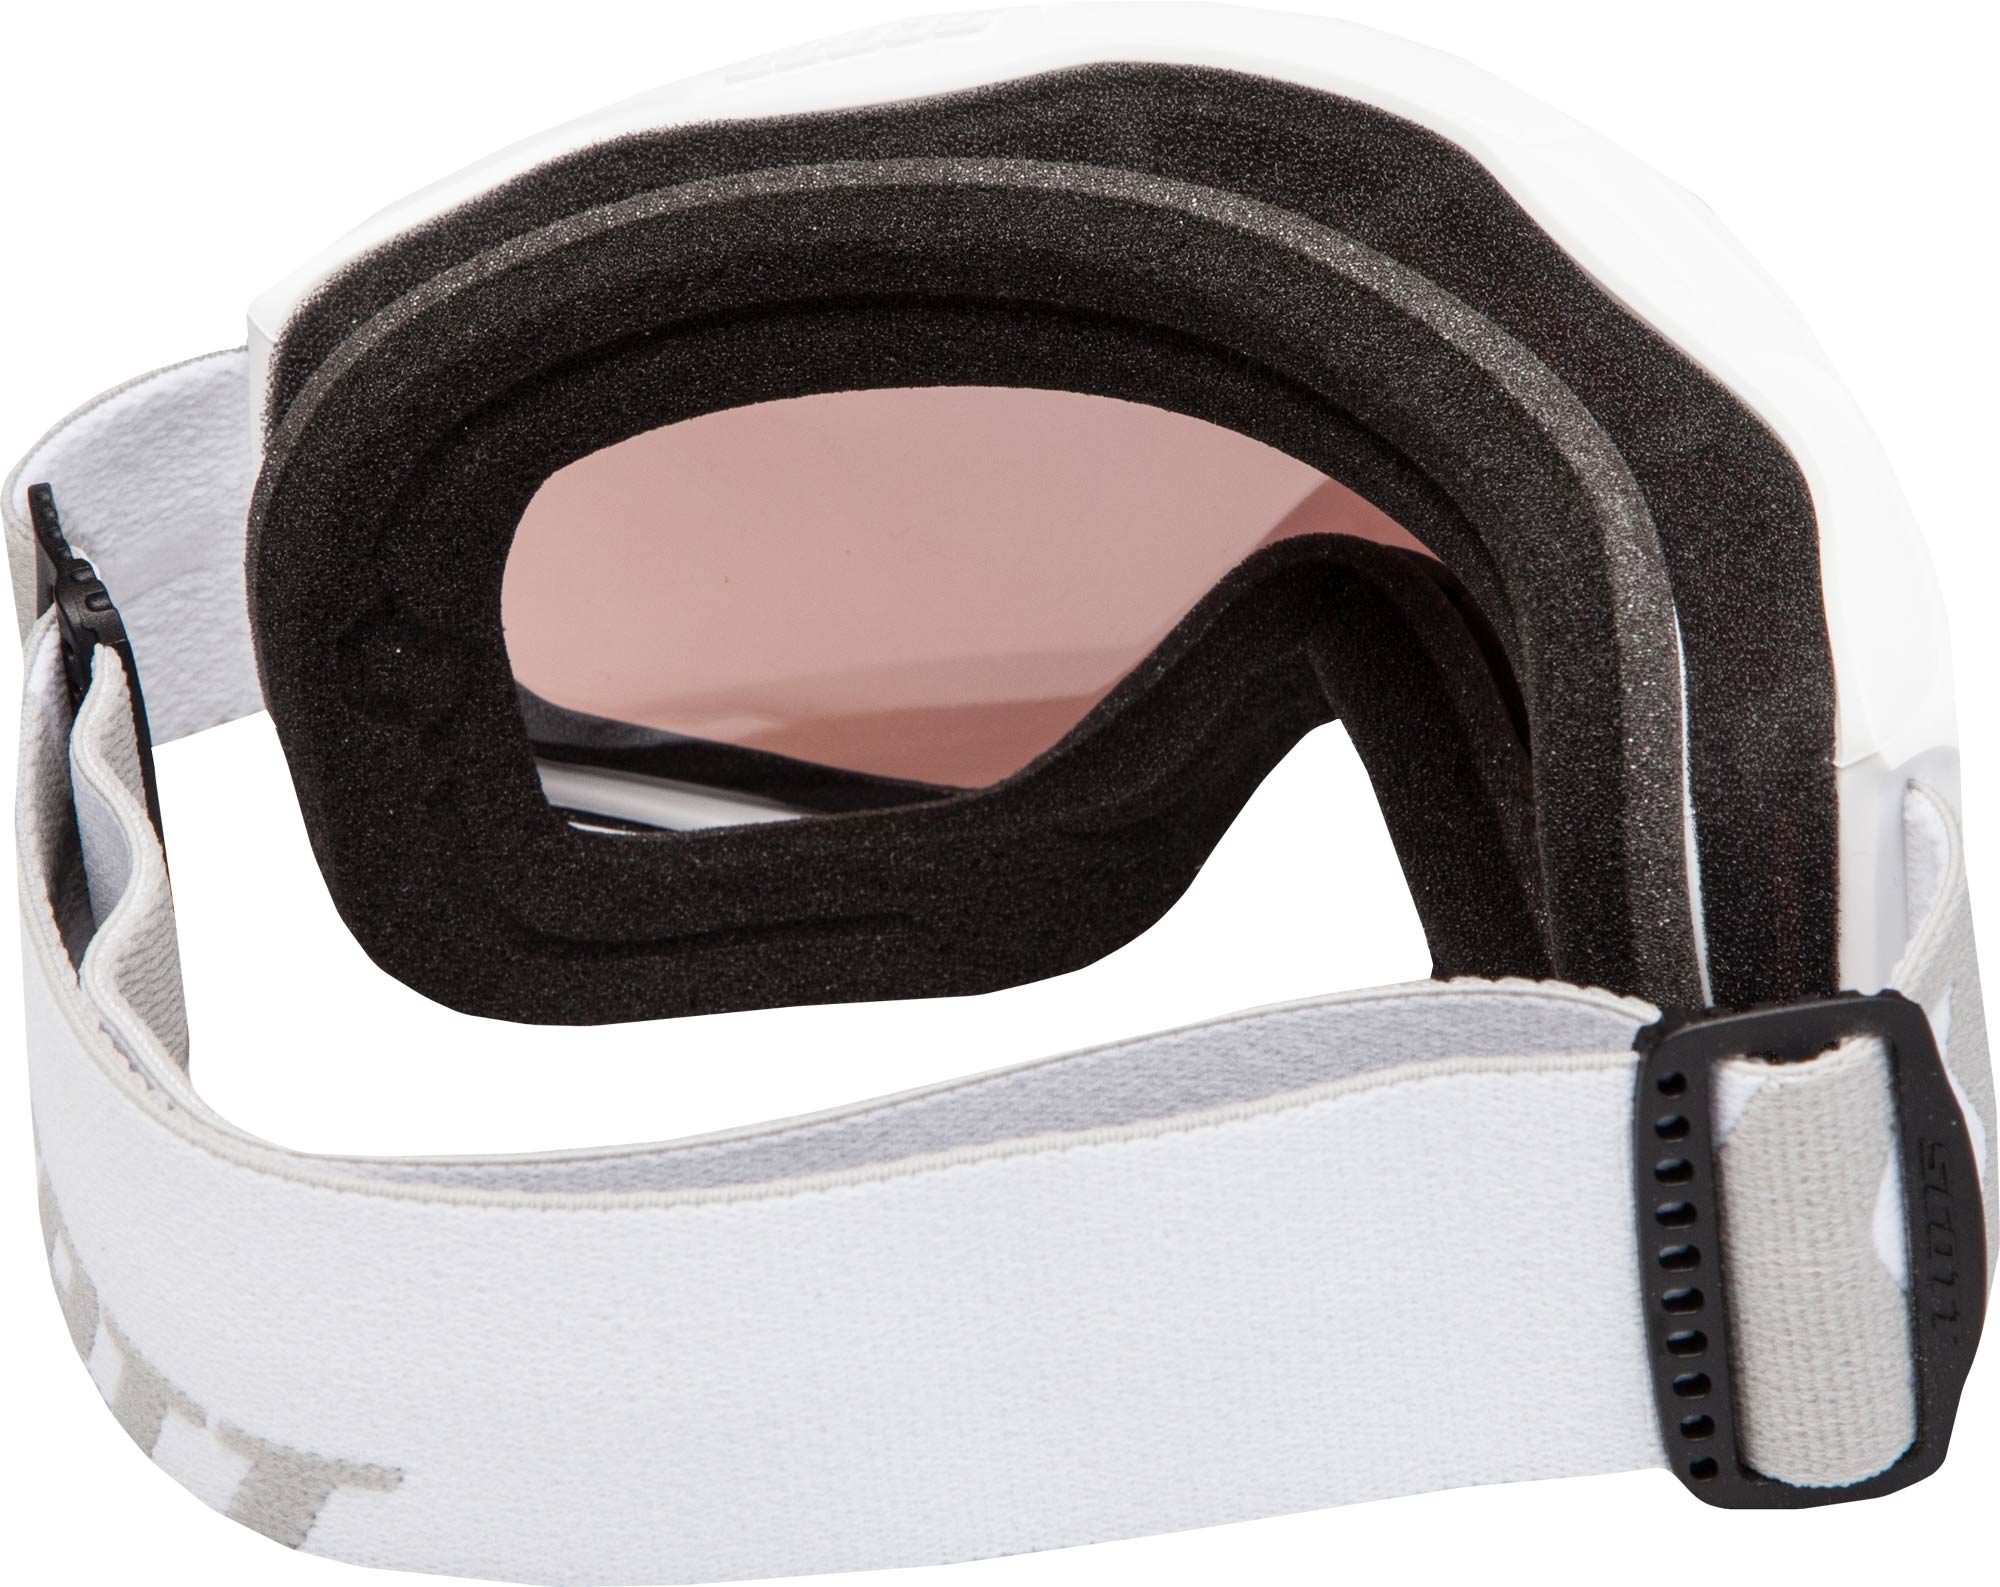 Unisex ski goggles